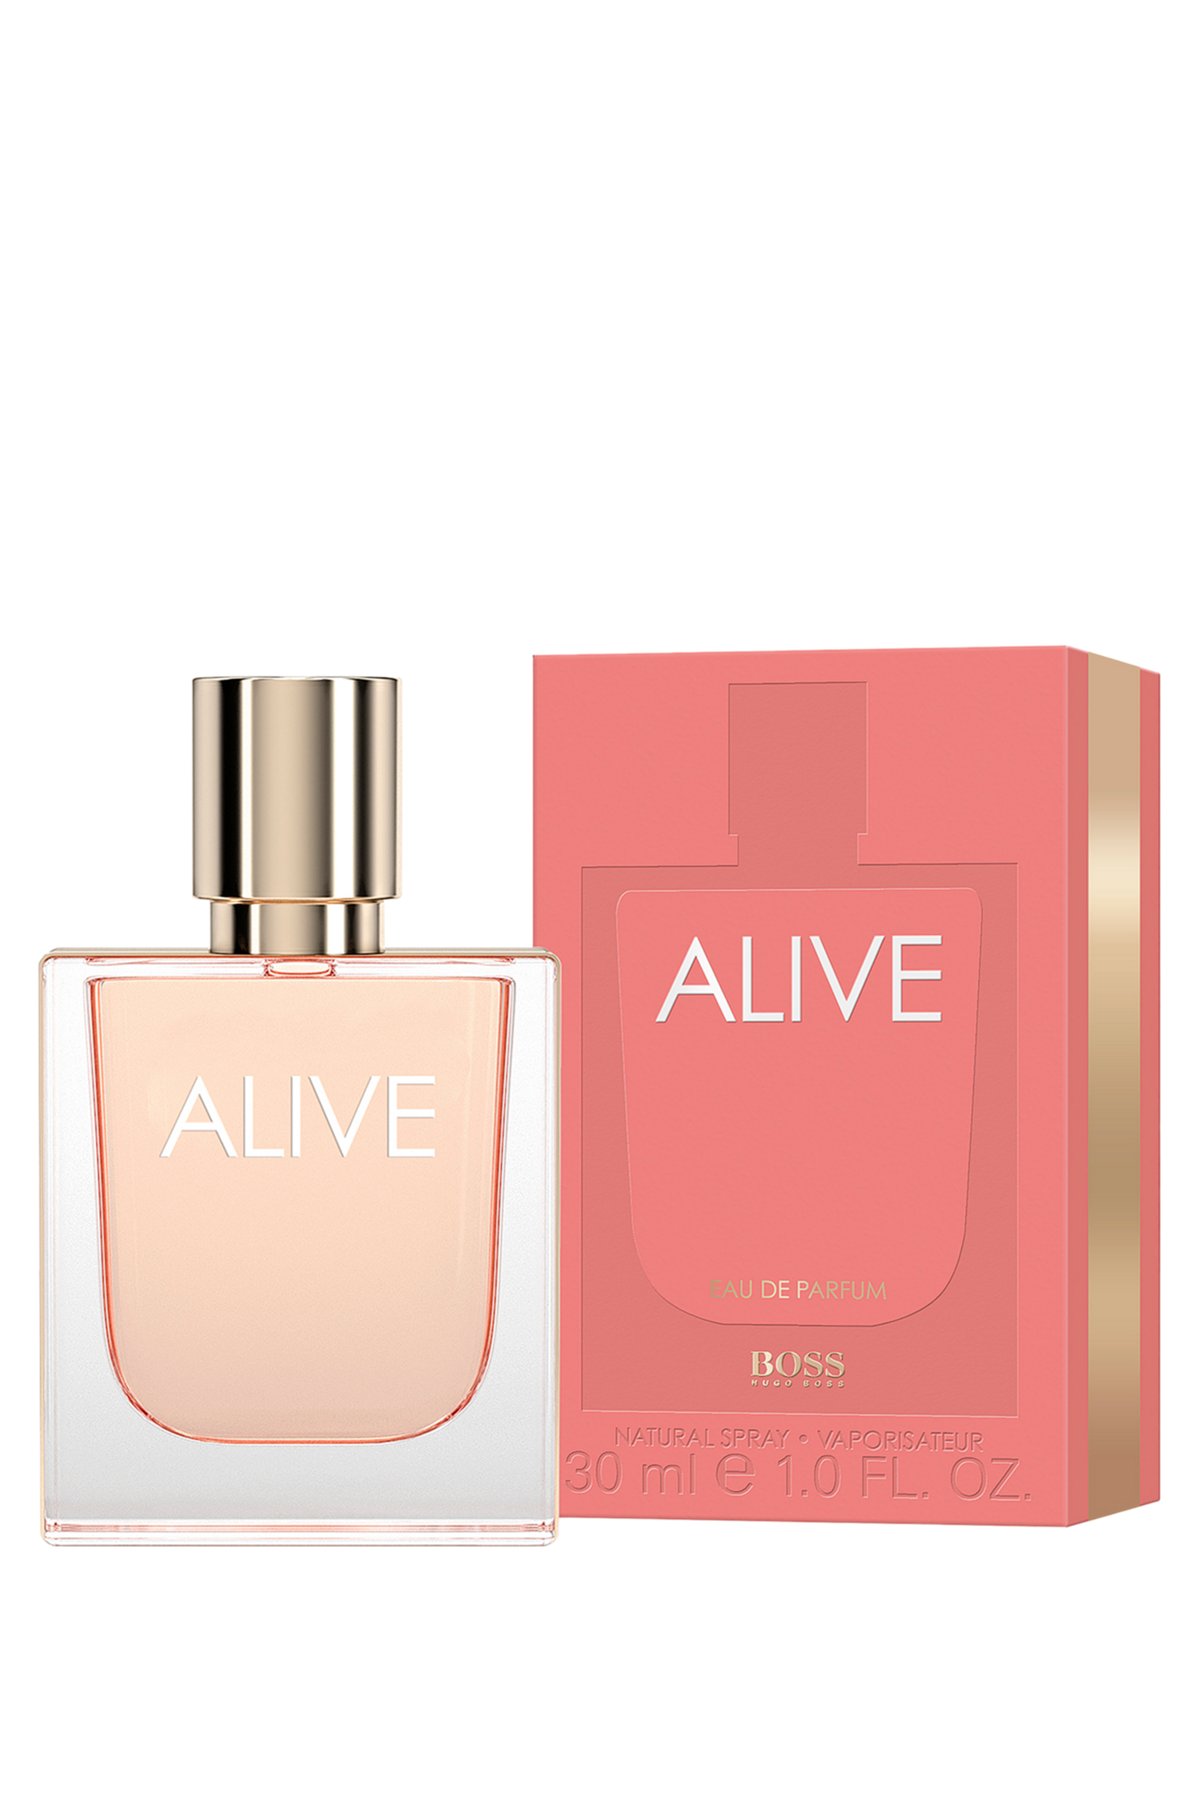 BOSS Alive Eau de Parfum 30 ml, Assorted-Pre-Pack